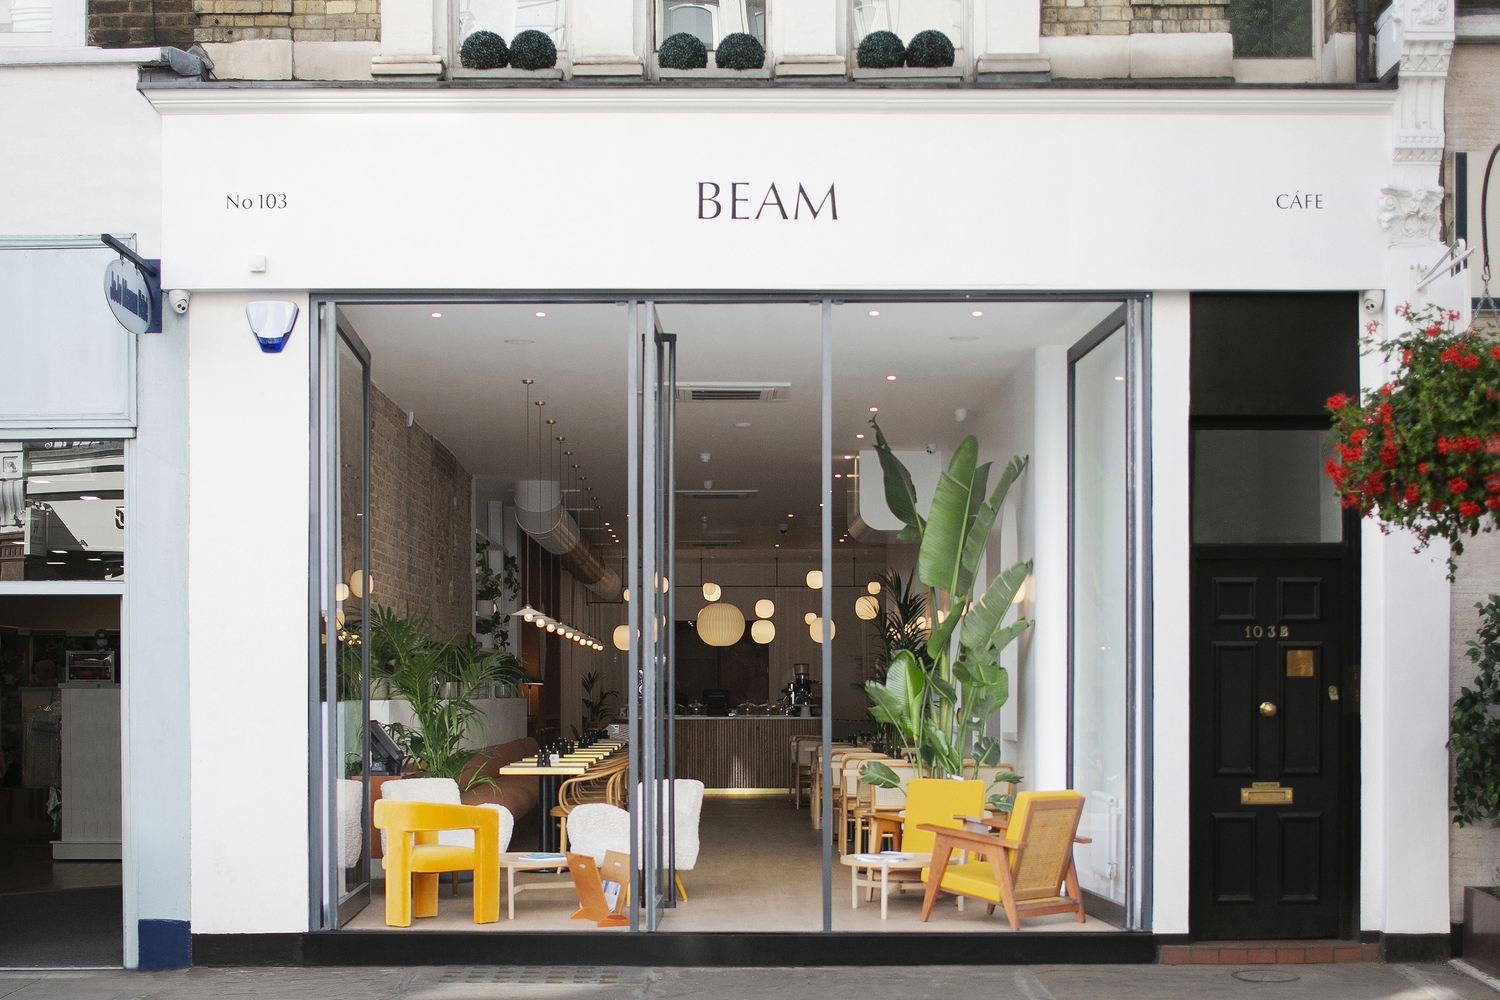 Mẫu thiết kế quán cafe: Beam Cafe